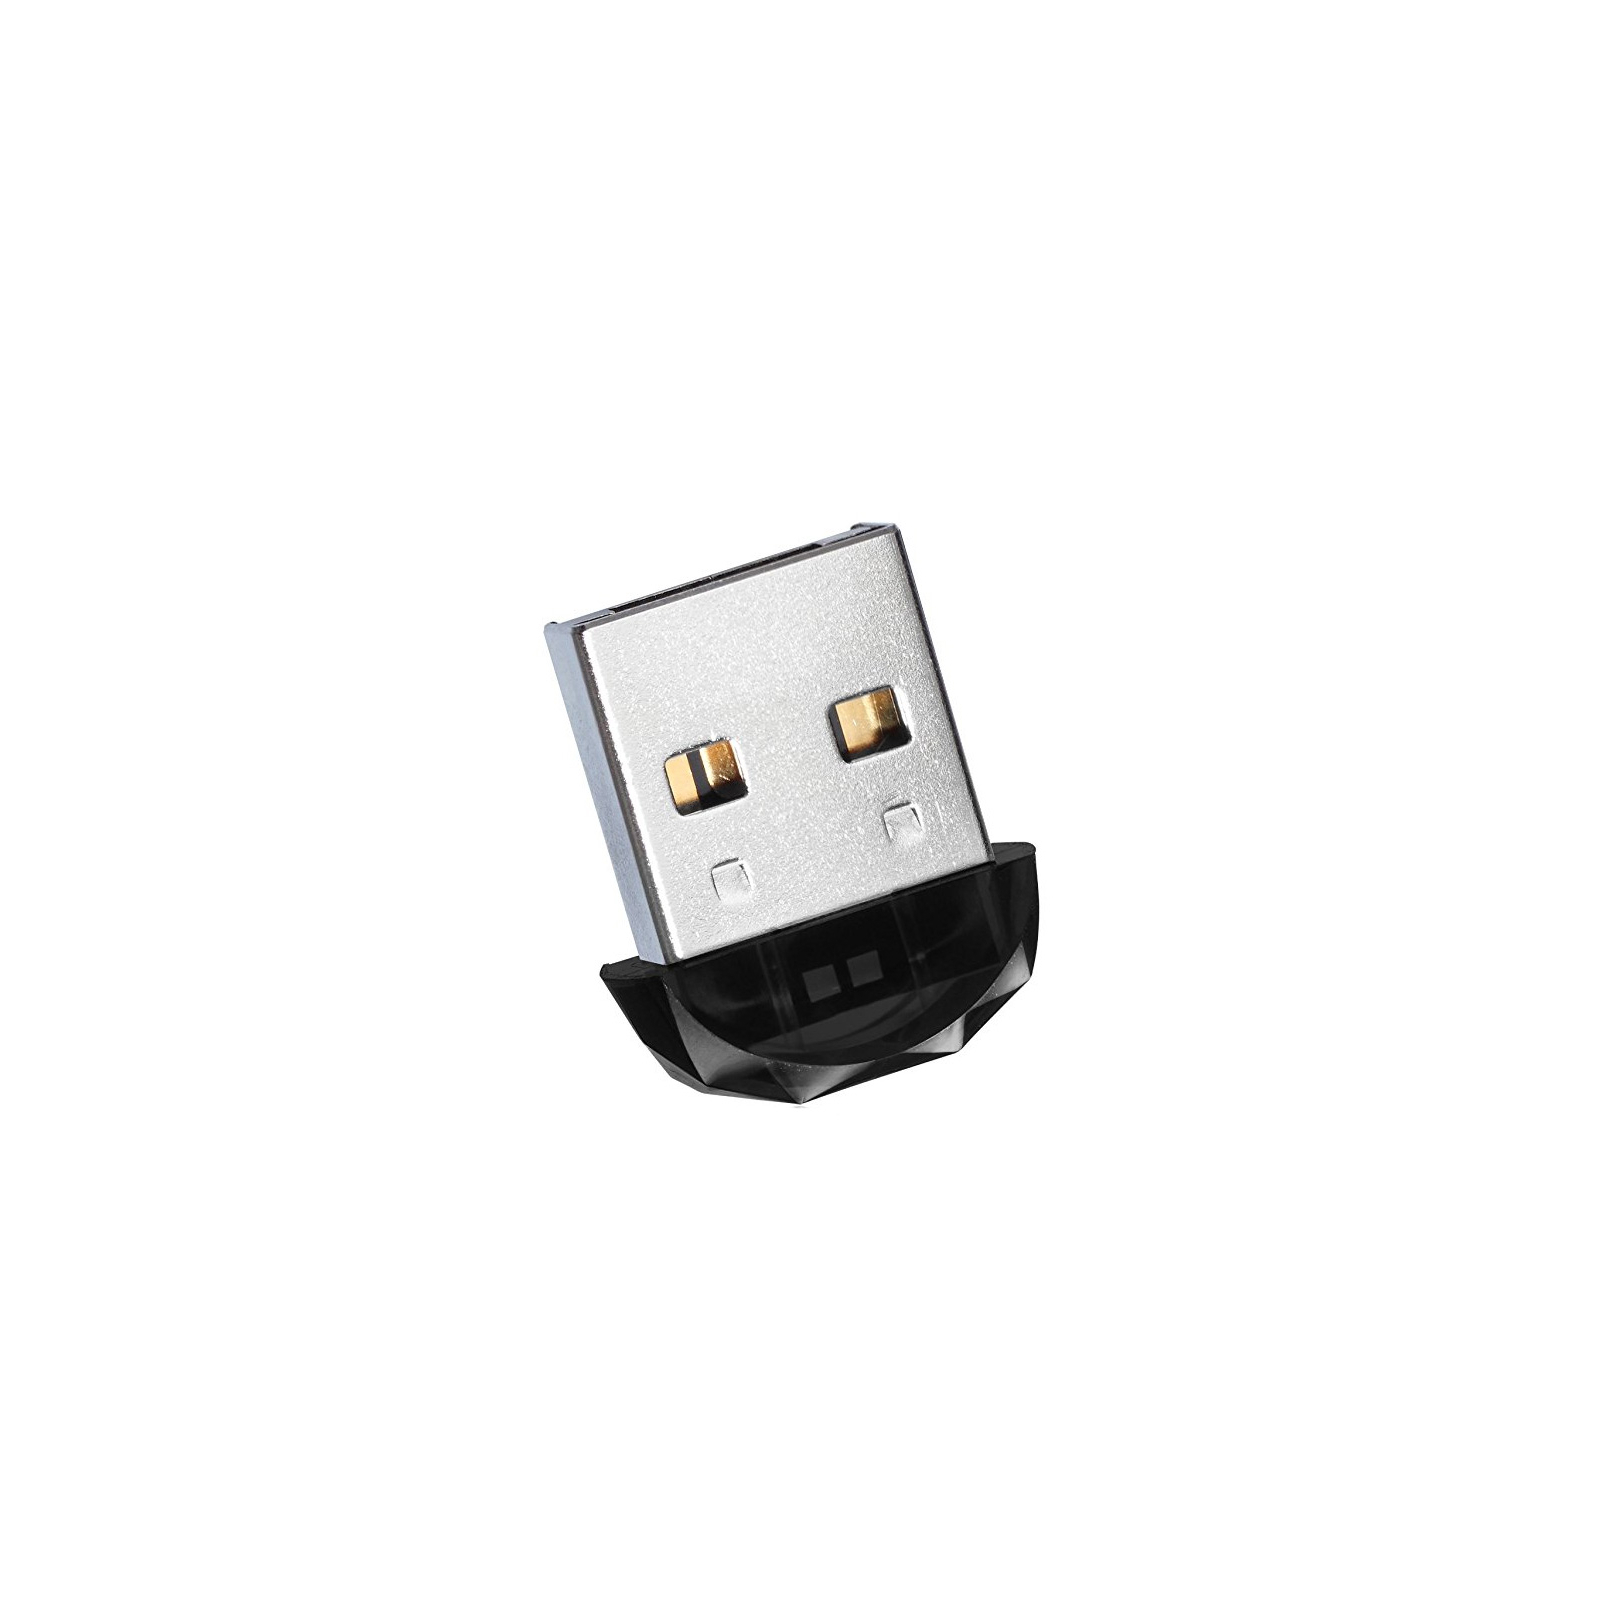 USB флеш накопитель ADATA 32GB DashDrive Durable UD310 Black USB 2.0 (AUD310-32G-RBK) изображение 2